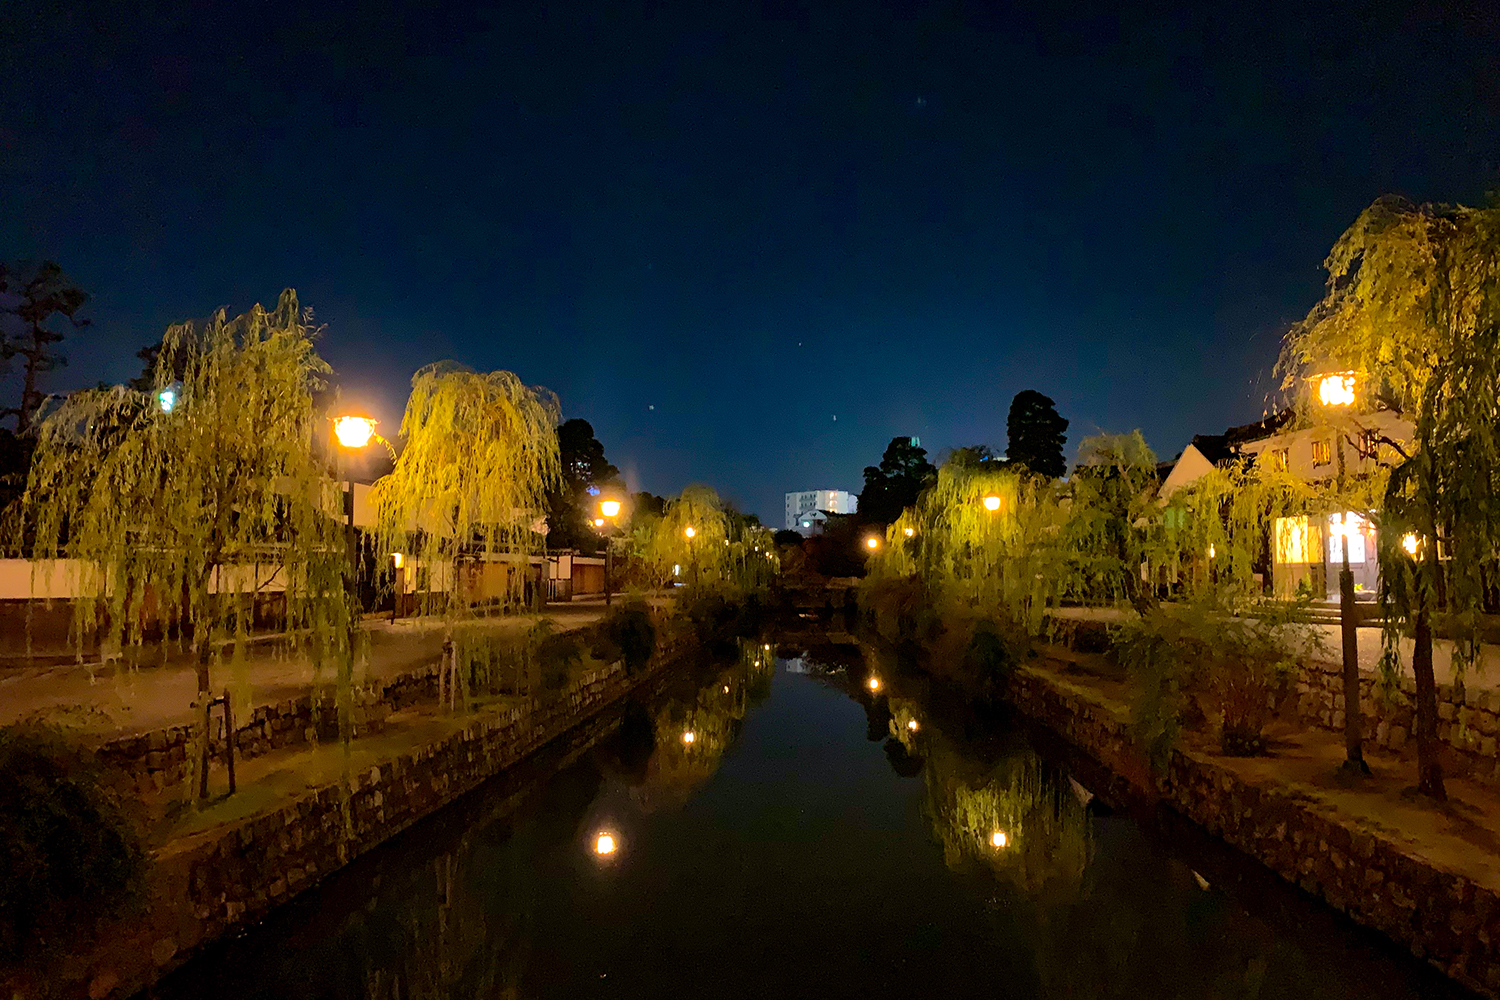 夜の美観地区、石井幹子さんによる夜間景観照明